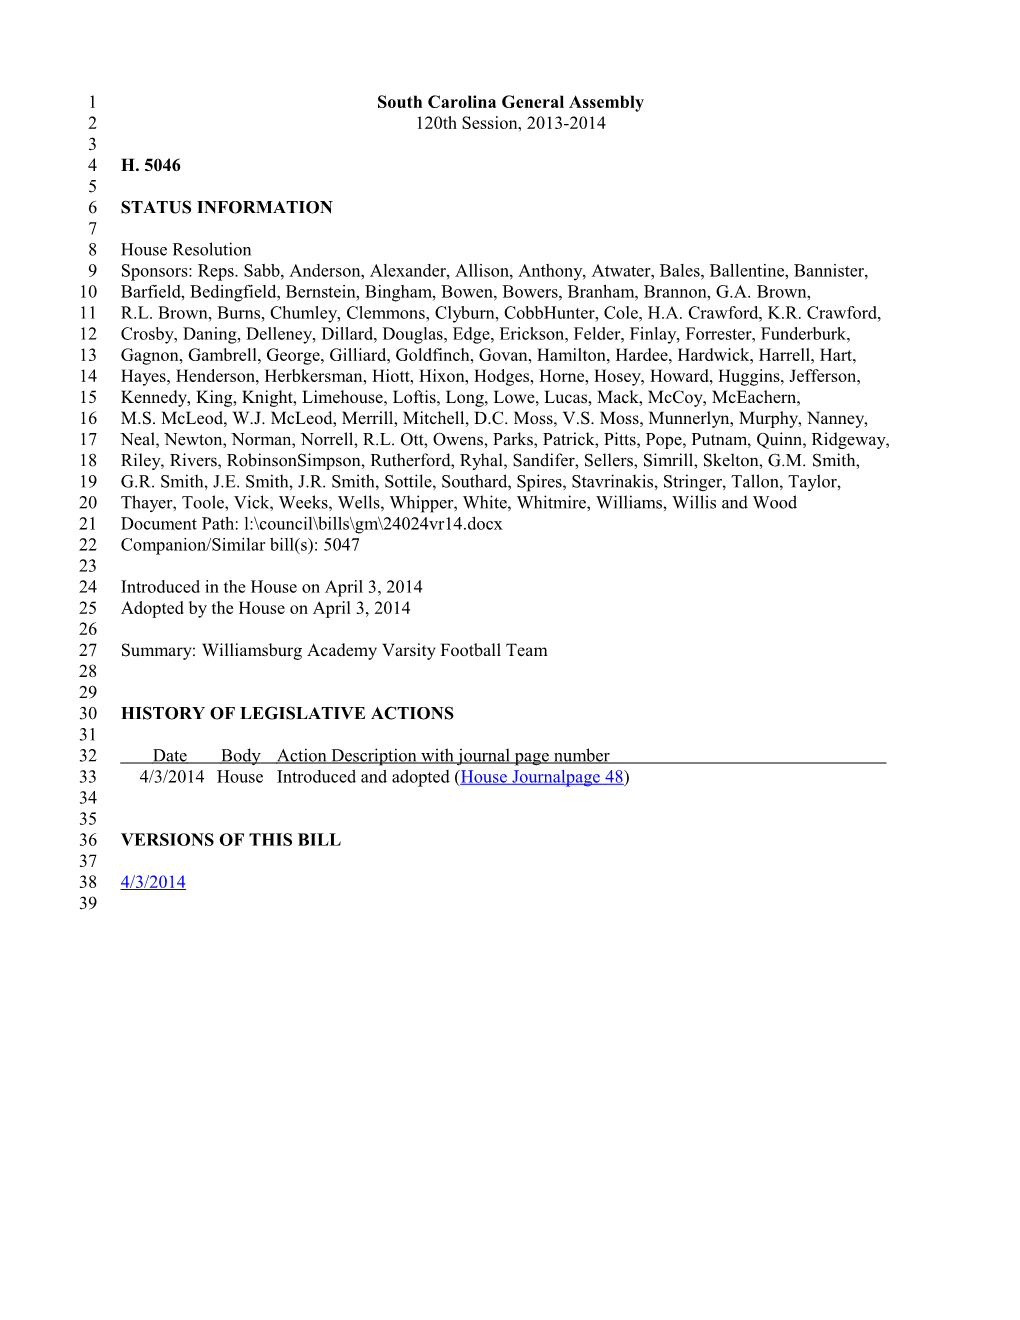 2013-2014 Bill 5046: Williamsburg Academy Varsity Football Team - South Carolina Legislature